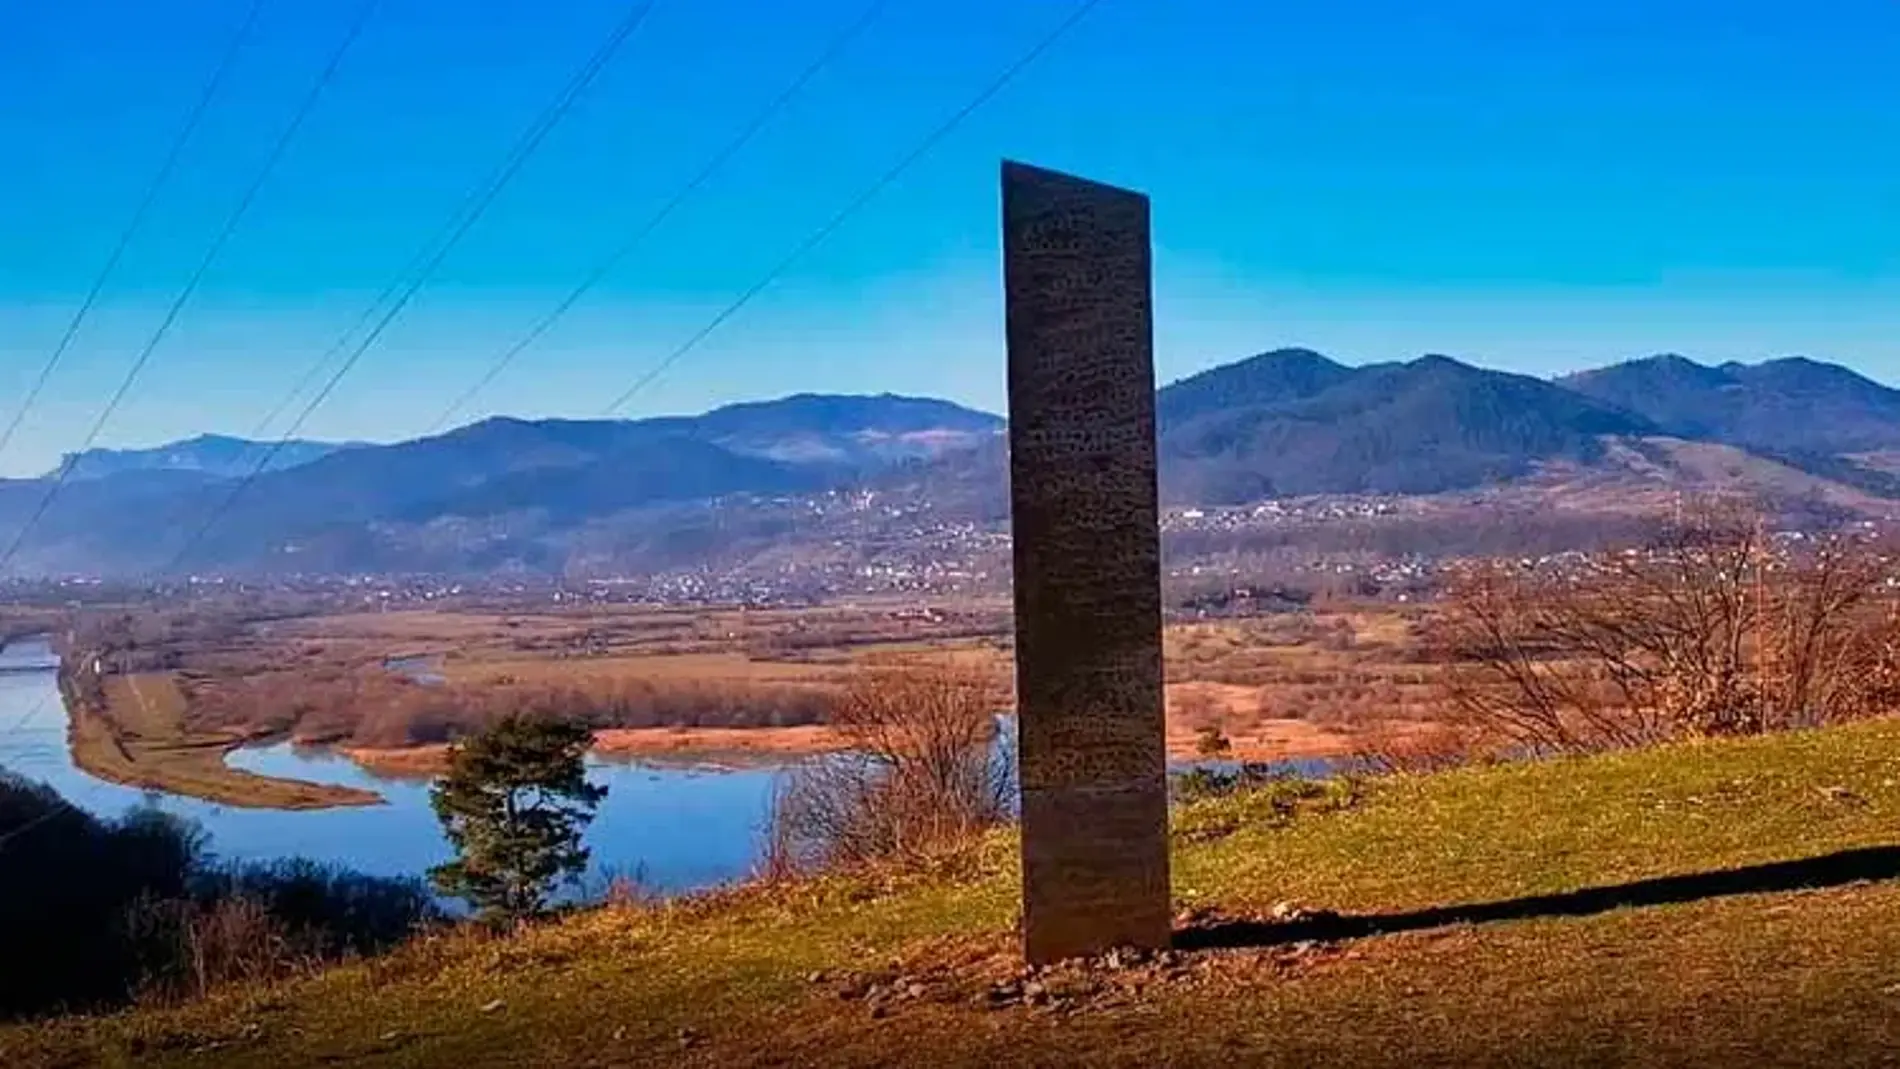 El monolito descubierto en Rumanía es un pilar triangular metálico brillante de casi 4 metros de altura con un patrón cíclico tallado en sus tres caras.